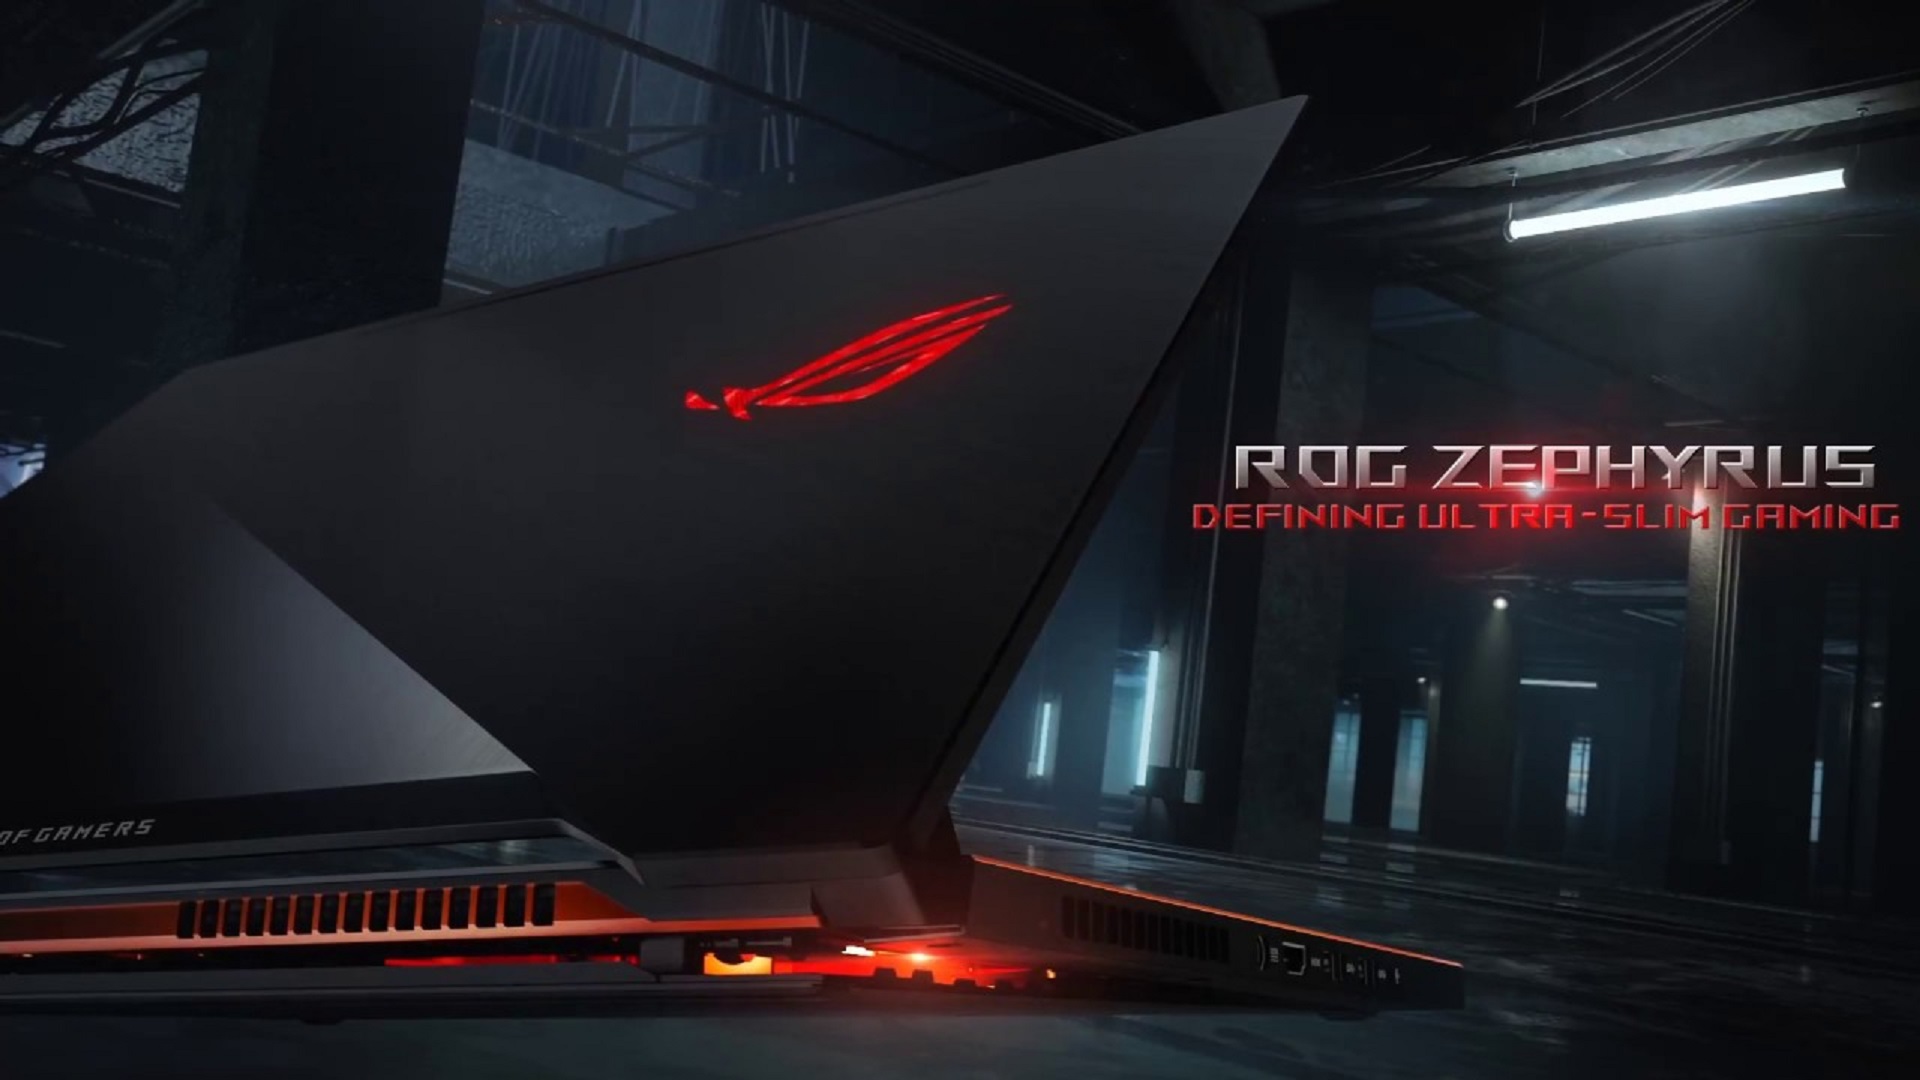 ASUS ROG Zephyrus – Gaming laptop mỏng nhất thế giới với NVIDIA GTX 1080